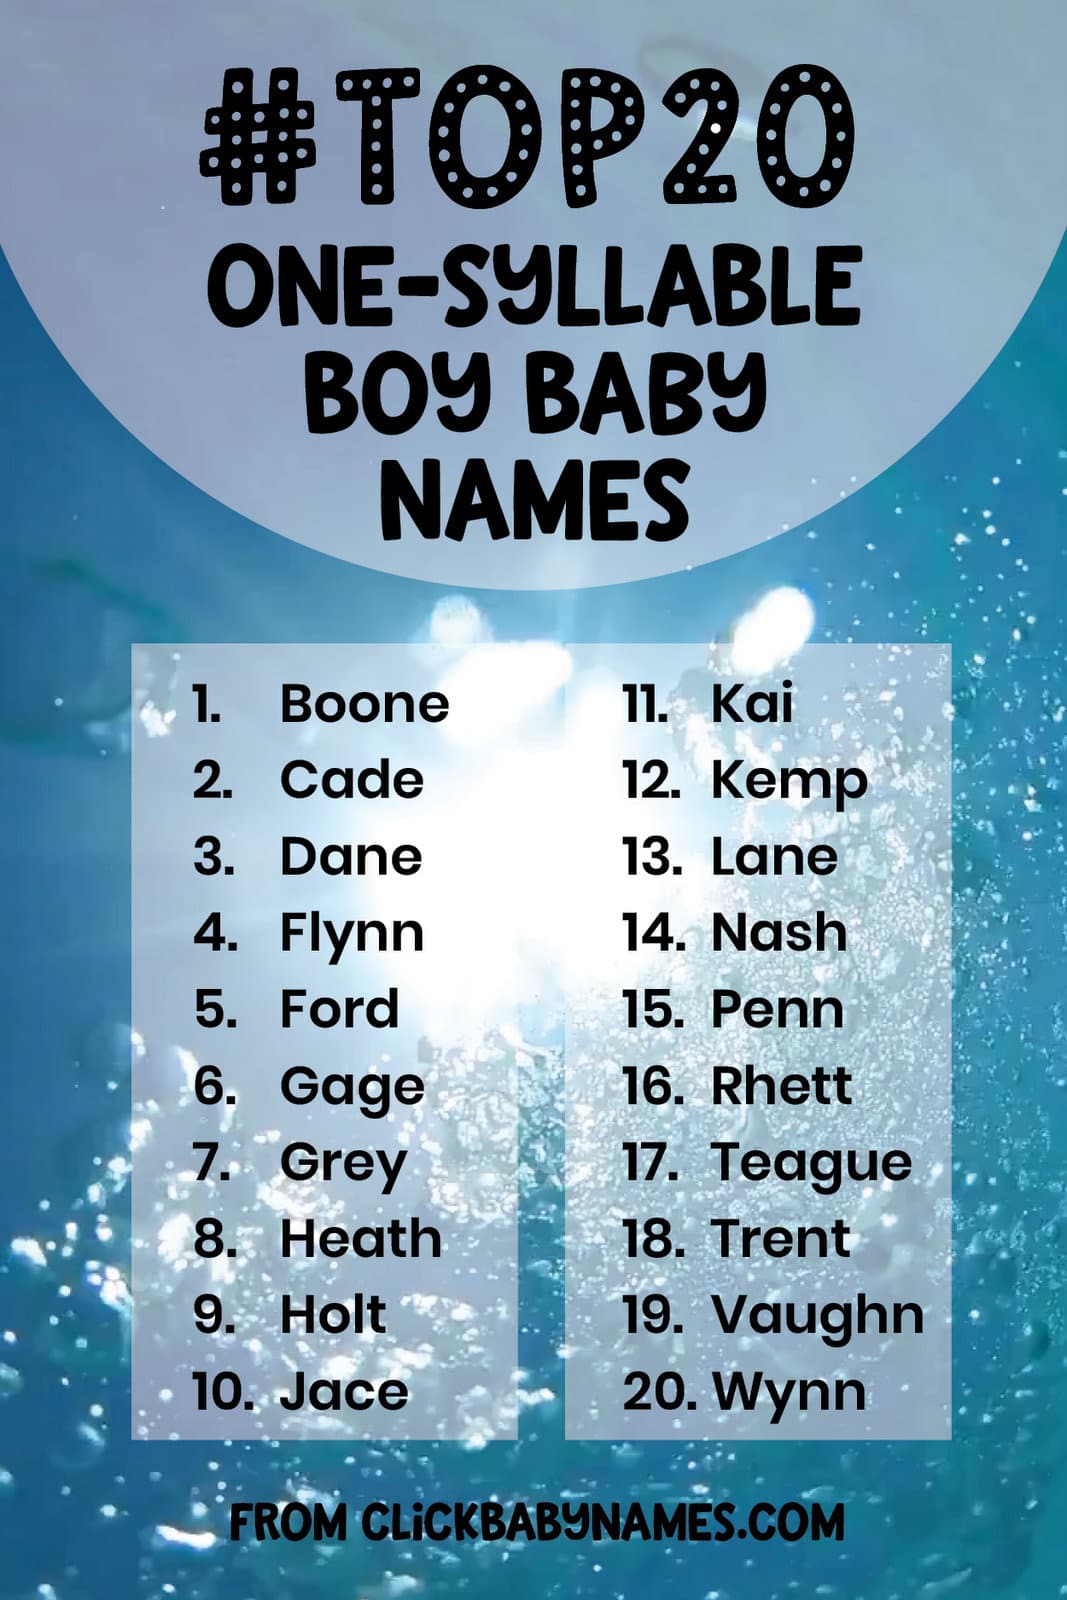 100 one-syllable boy baby names, at ClickBabyNames